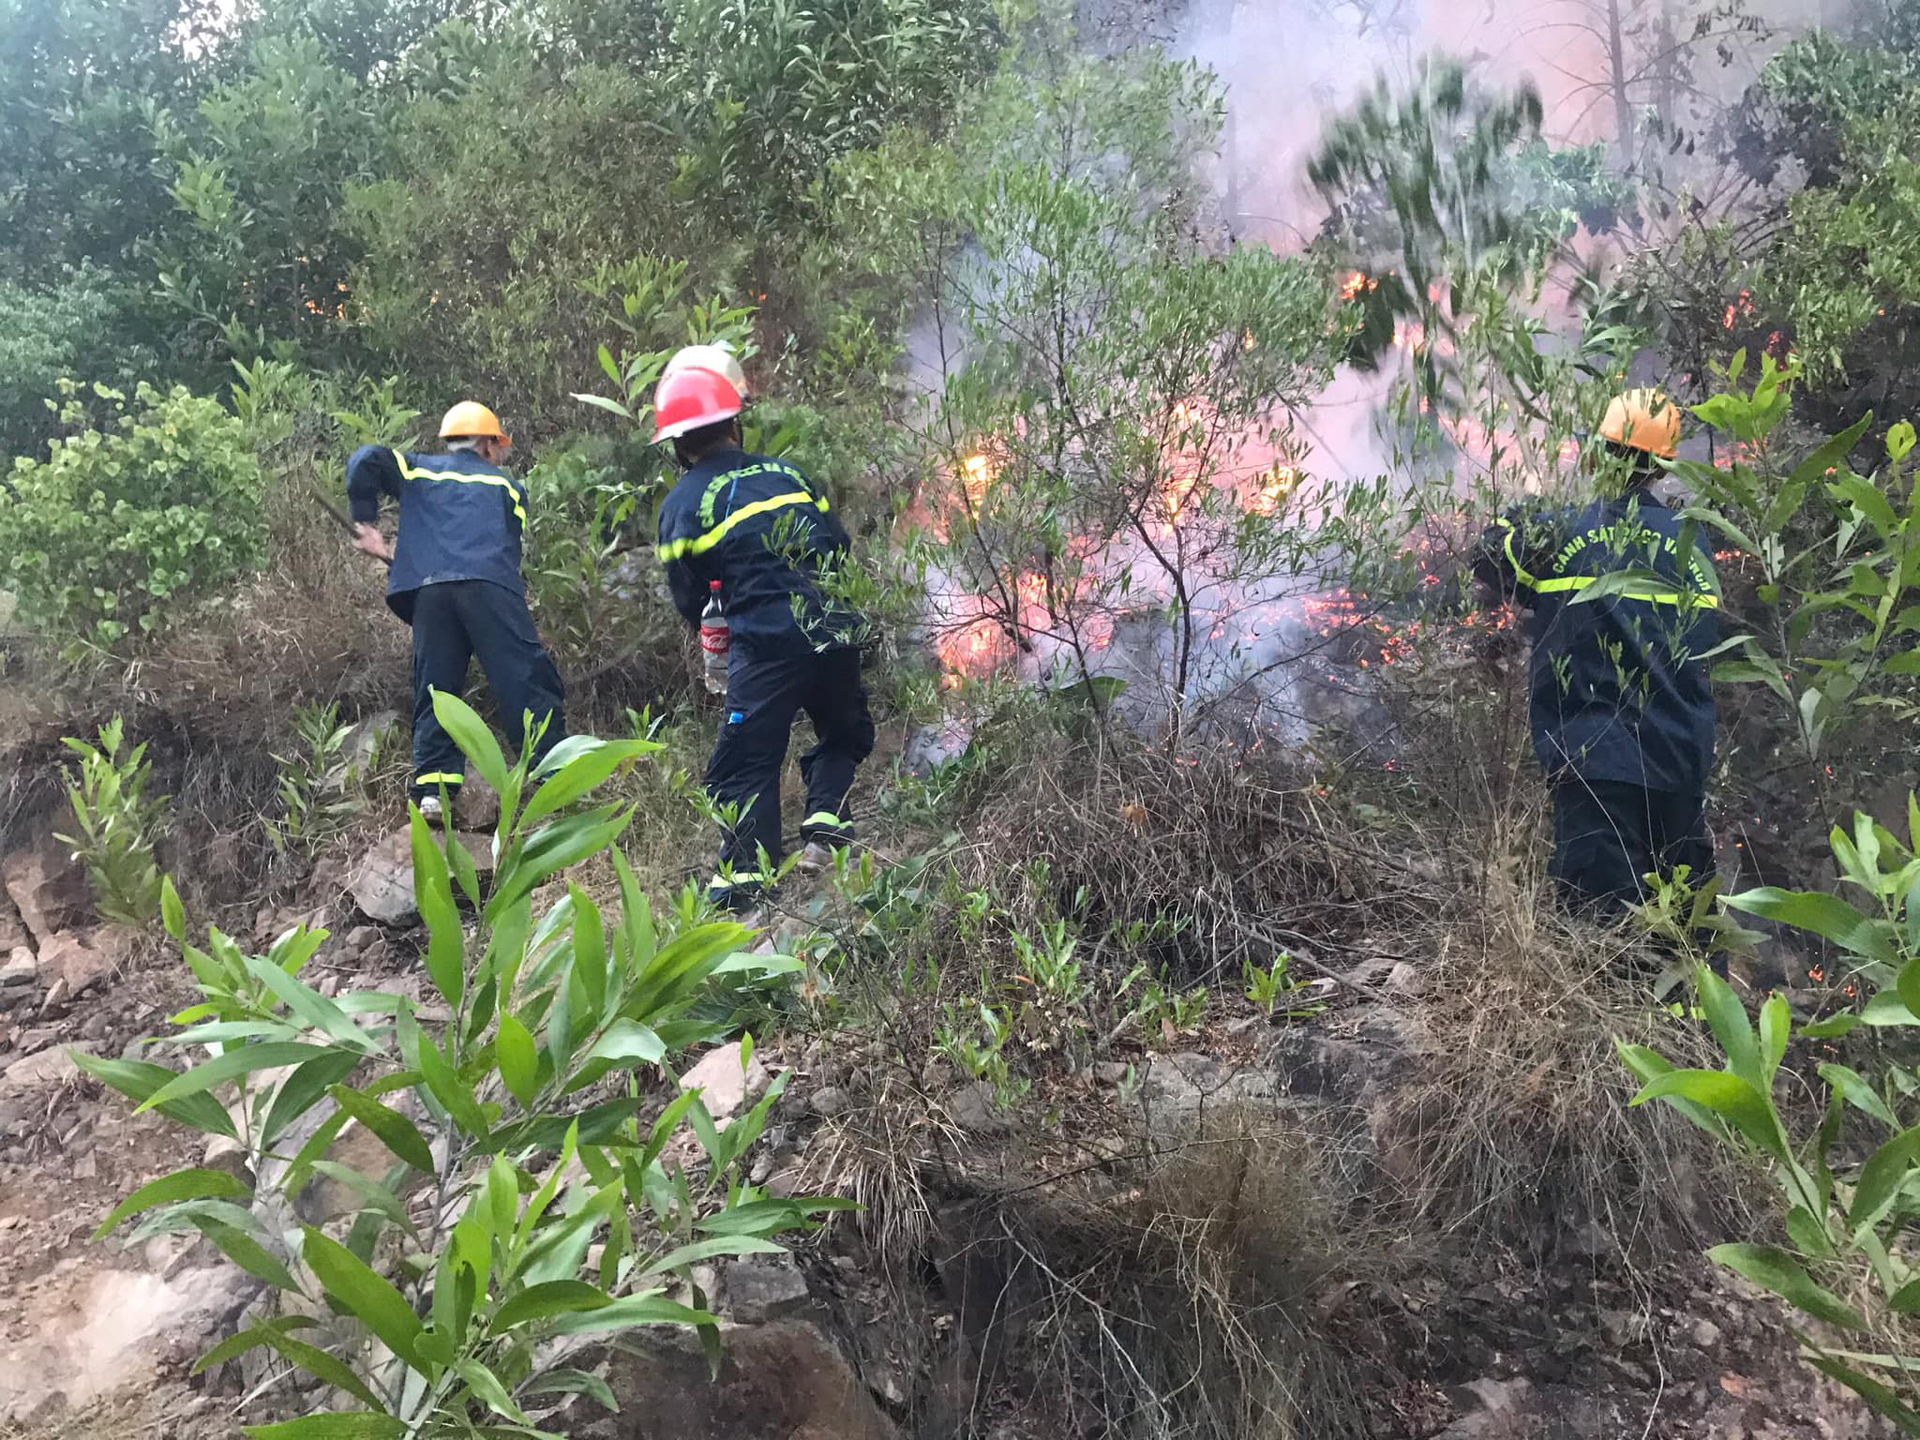 Trang thiết bị chữa cháy rừng thiếu và yếu nên mỗi khi xảy ra cháy rừng, việc khống chế cháy hết sức khó khăn, hiệu quả thấp, gây thiệt hại lớn.